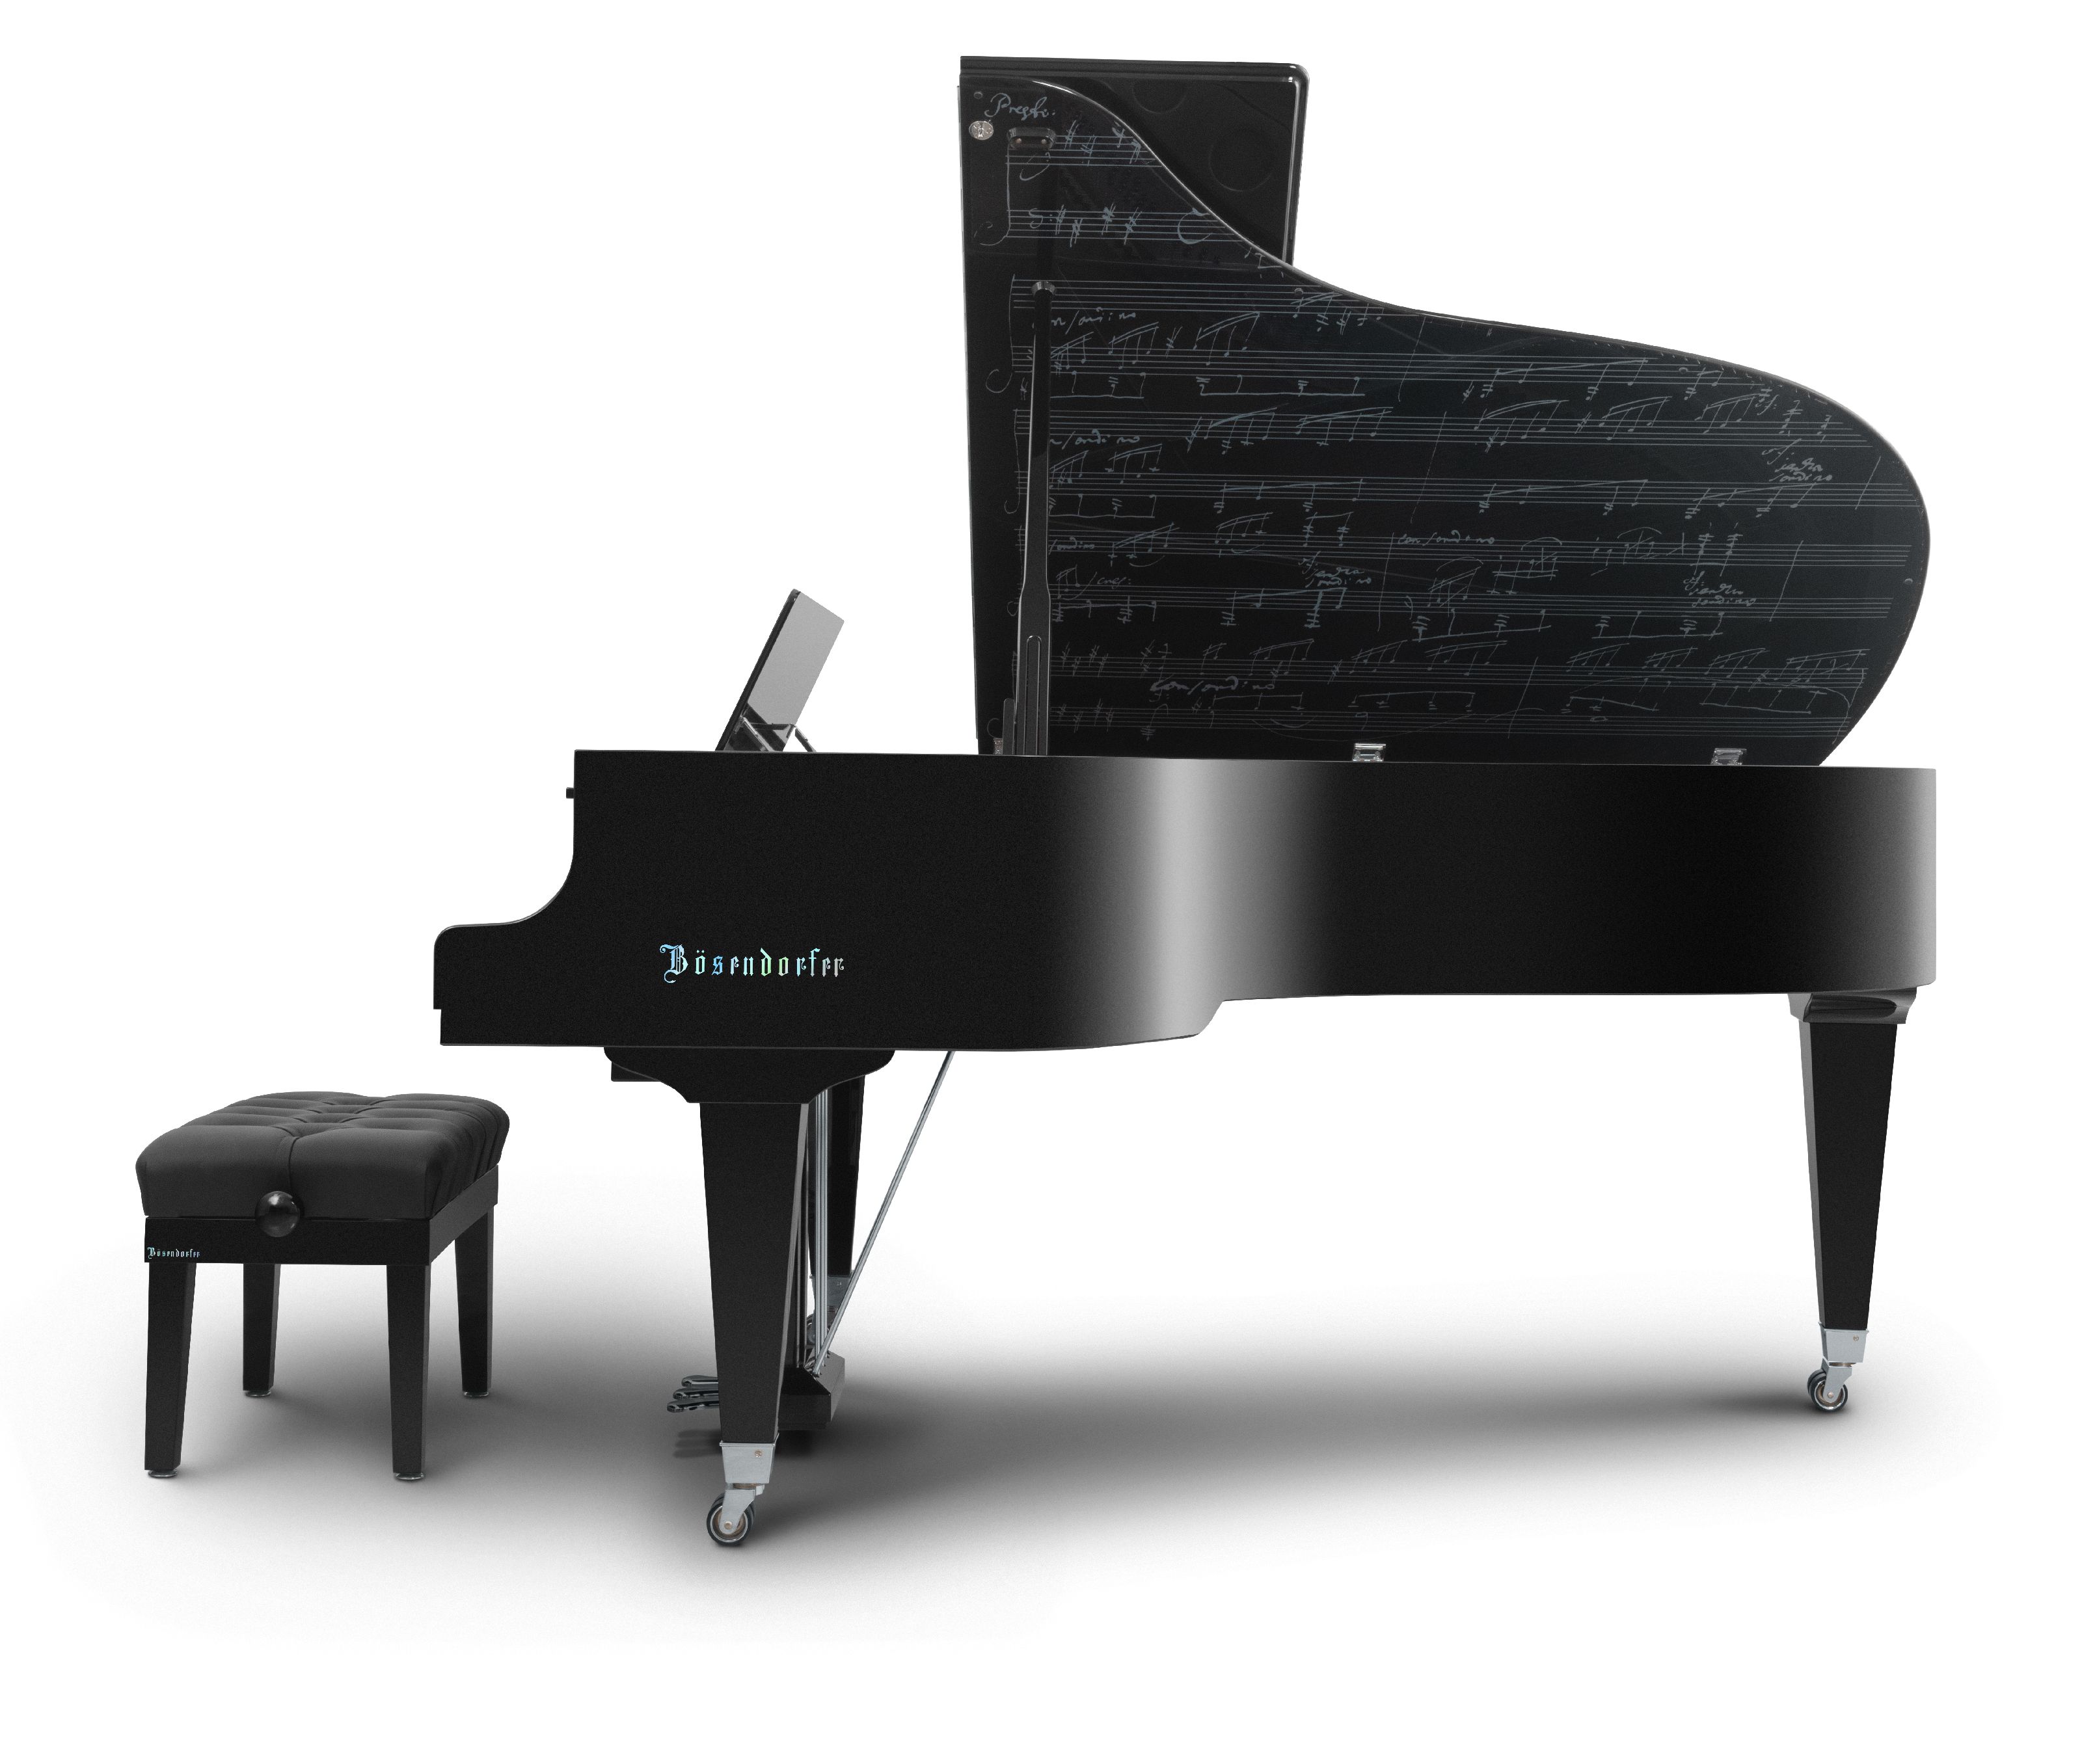 ベートーヴェン生誕250周年記念モデル - Collector's Item - Pianos 